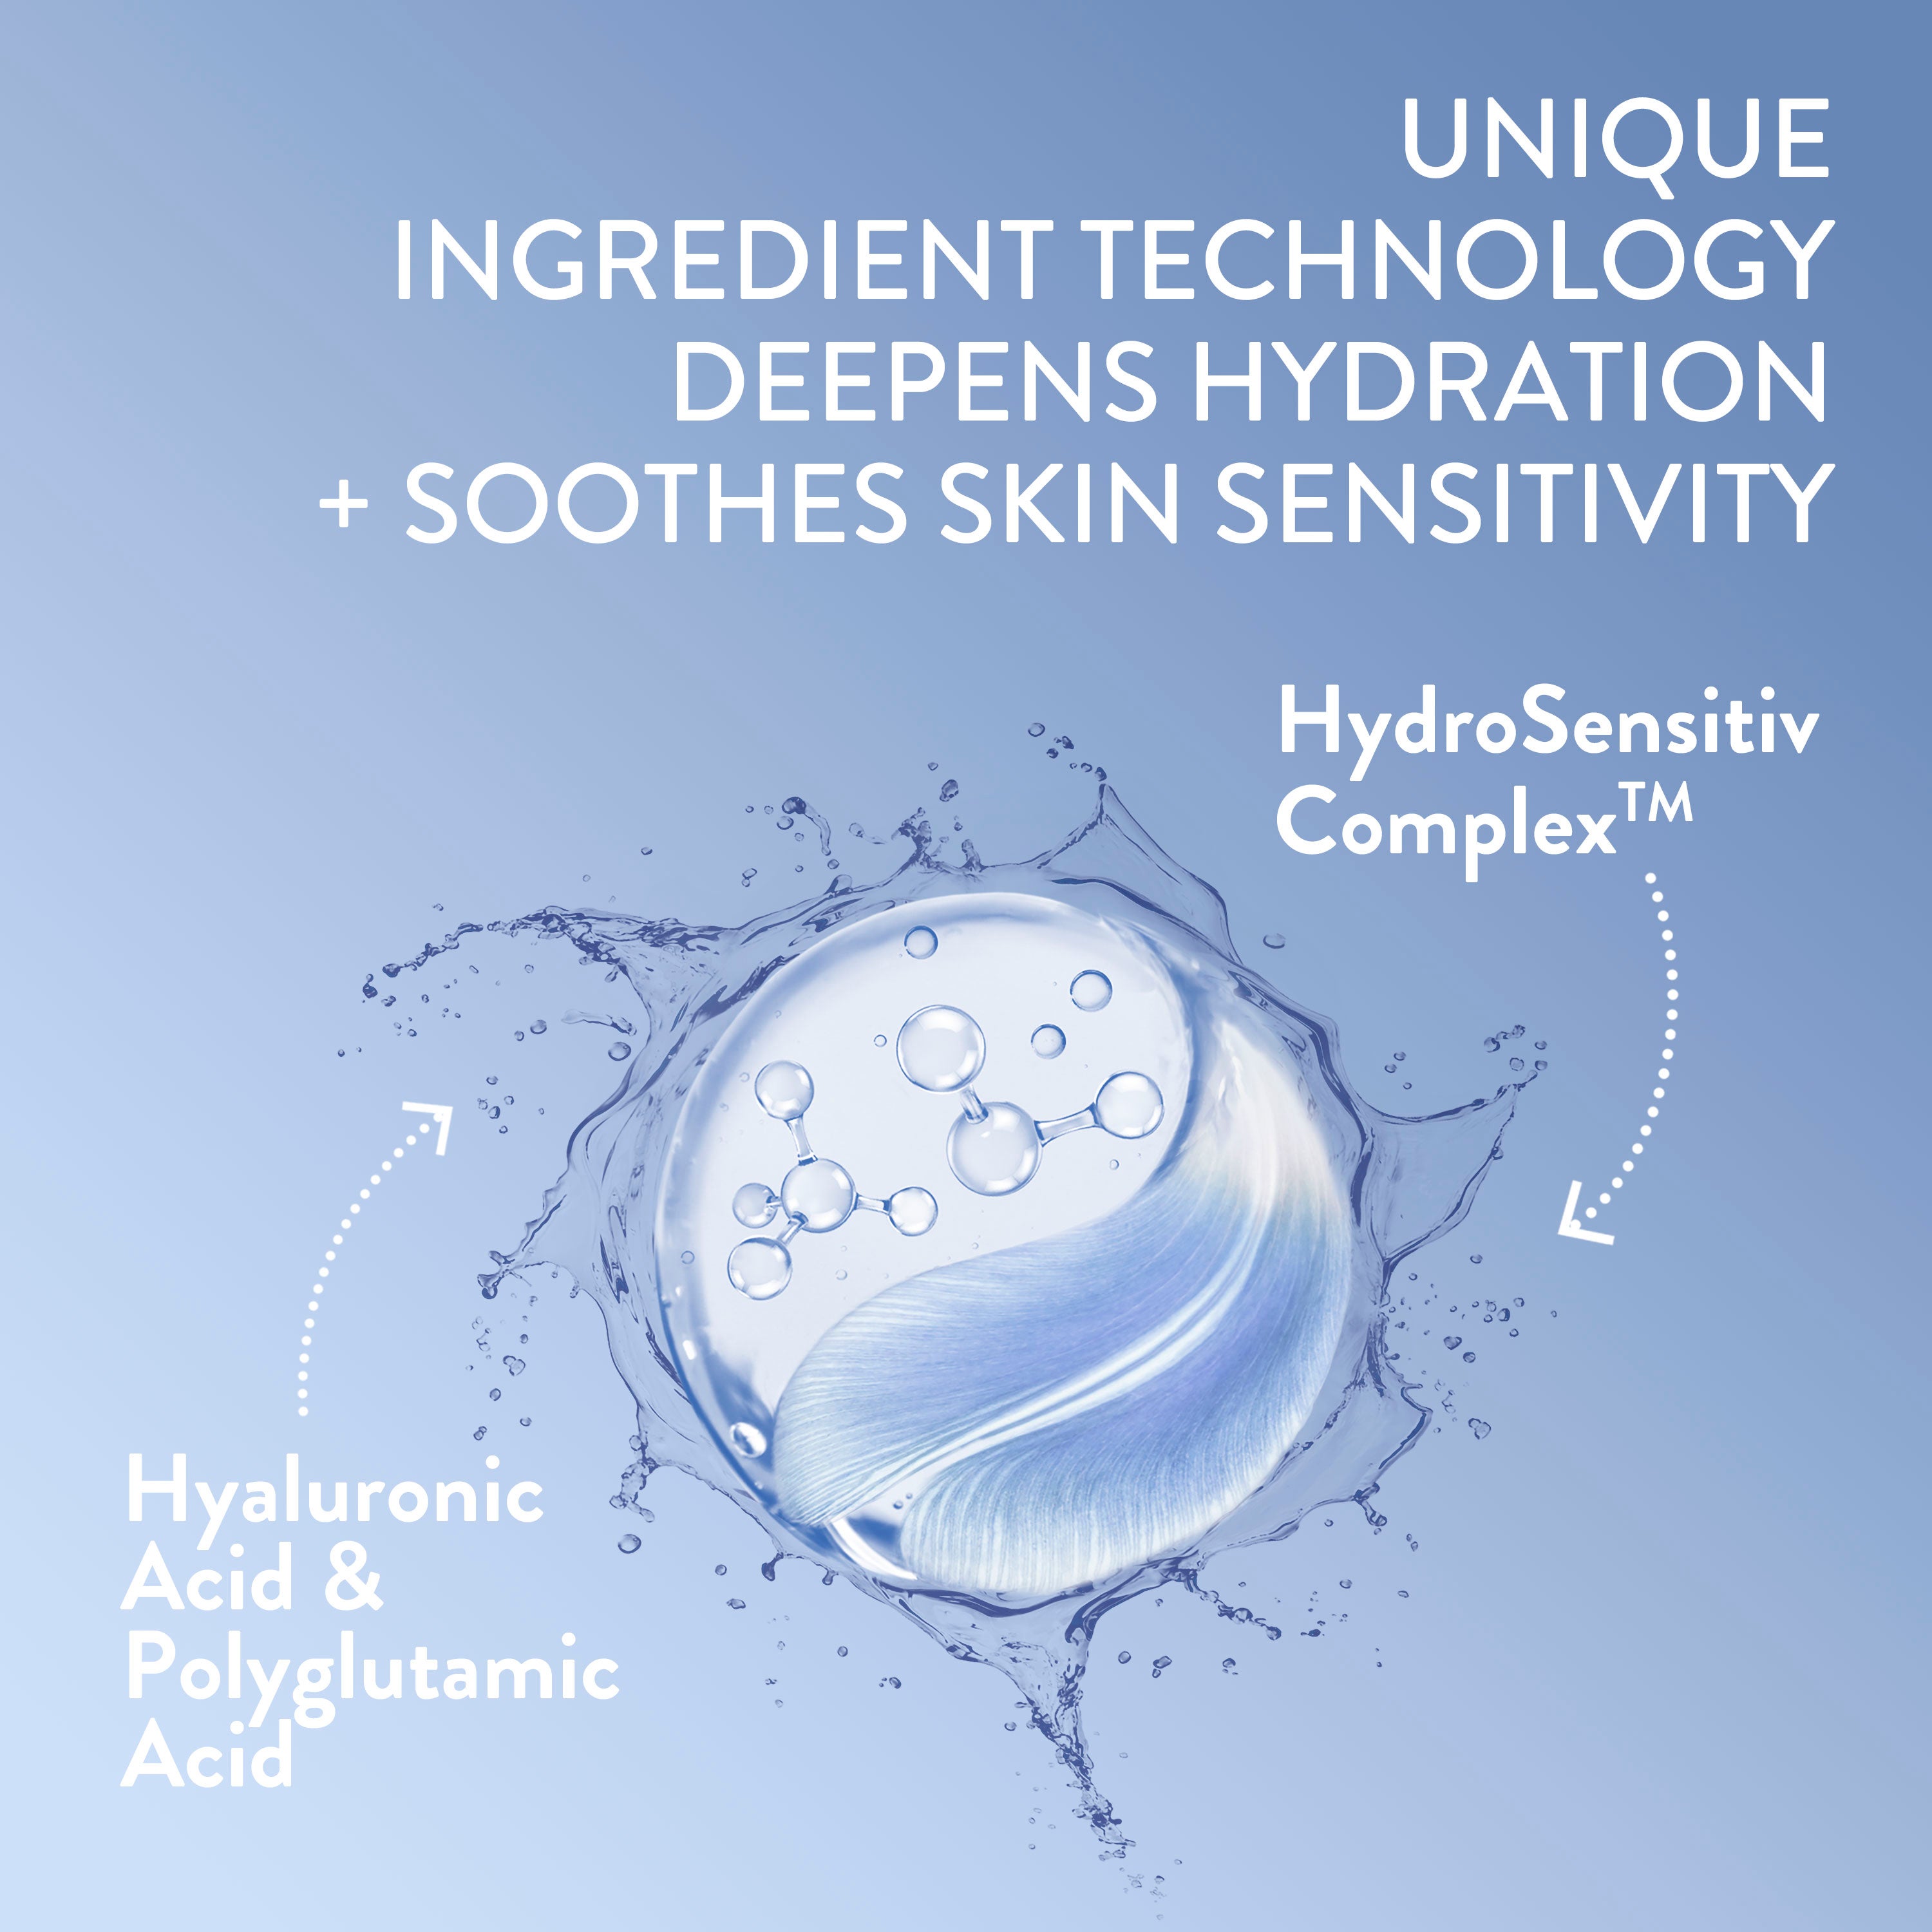 Deep Hydration Skin Restoring Water Gel Ingredients